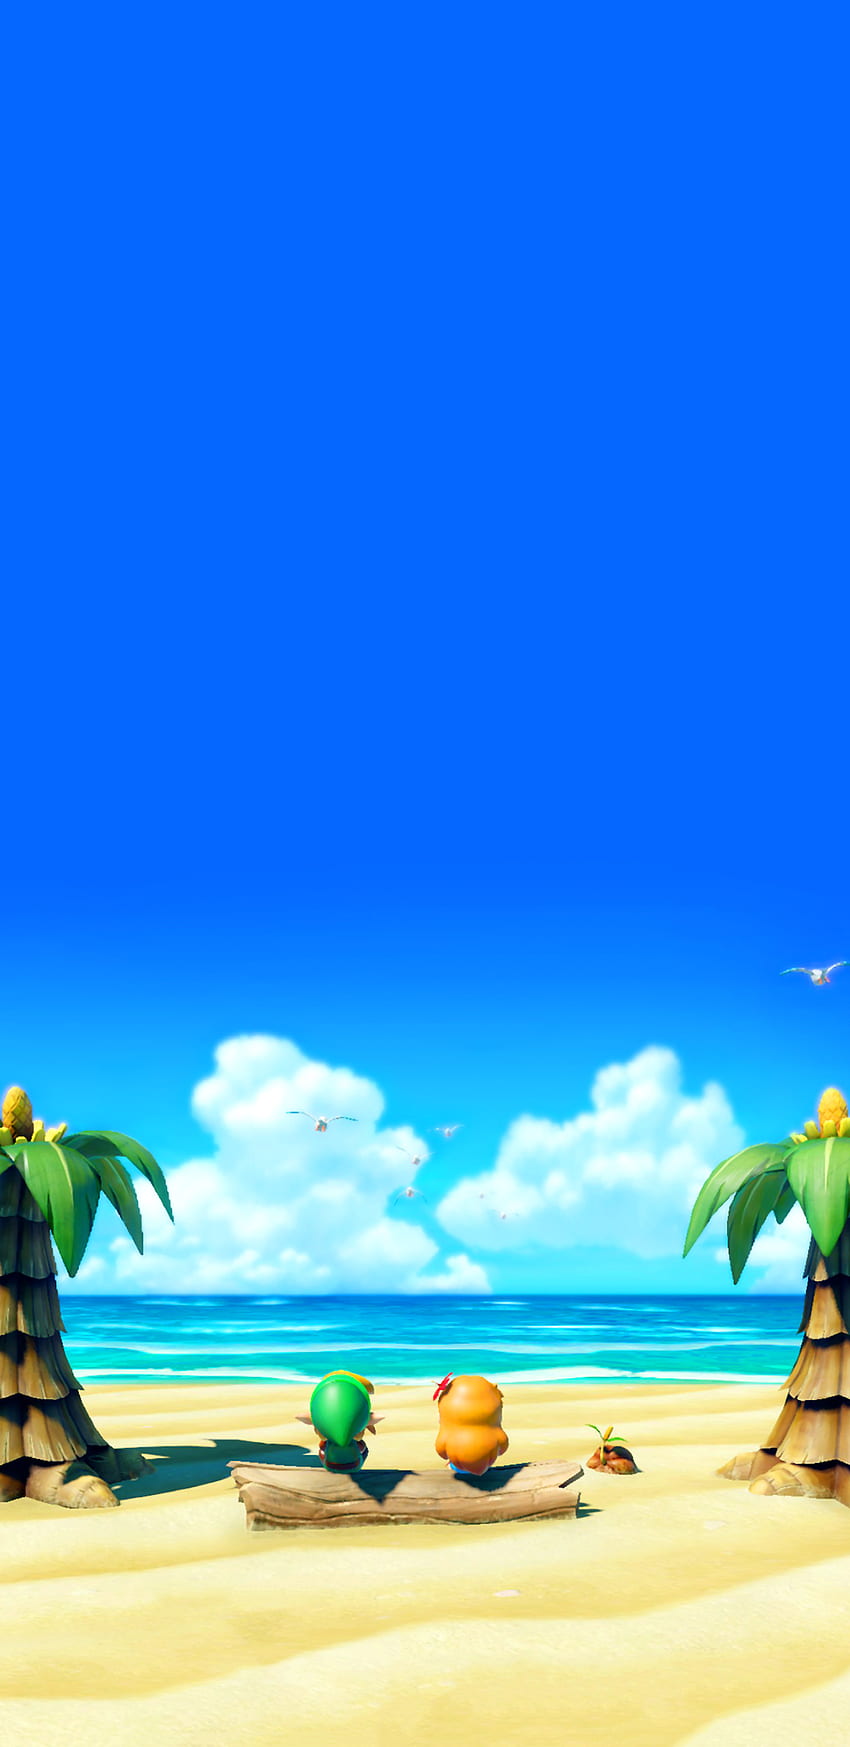 La leyenda de Zelda: Playa del despertar de Link fondo de pantalla del teléfono